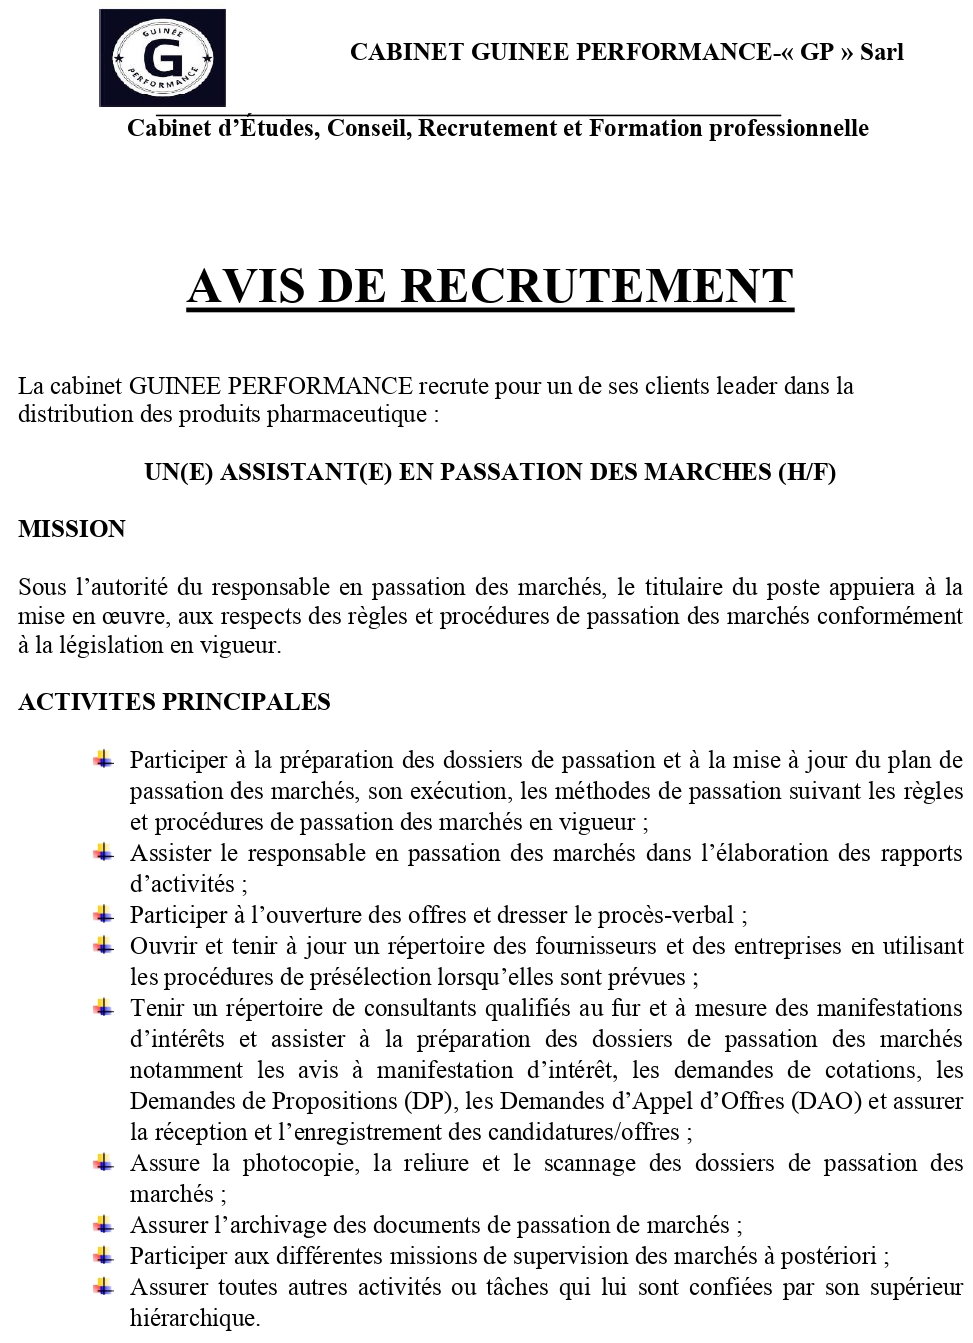 Avis De Recrutement D'un(E) Assistant(E) En Passation Des Marches (H/F) | page 1